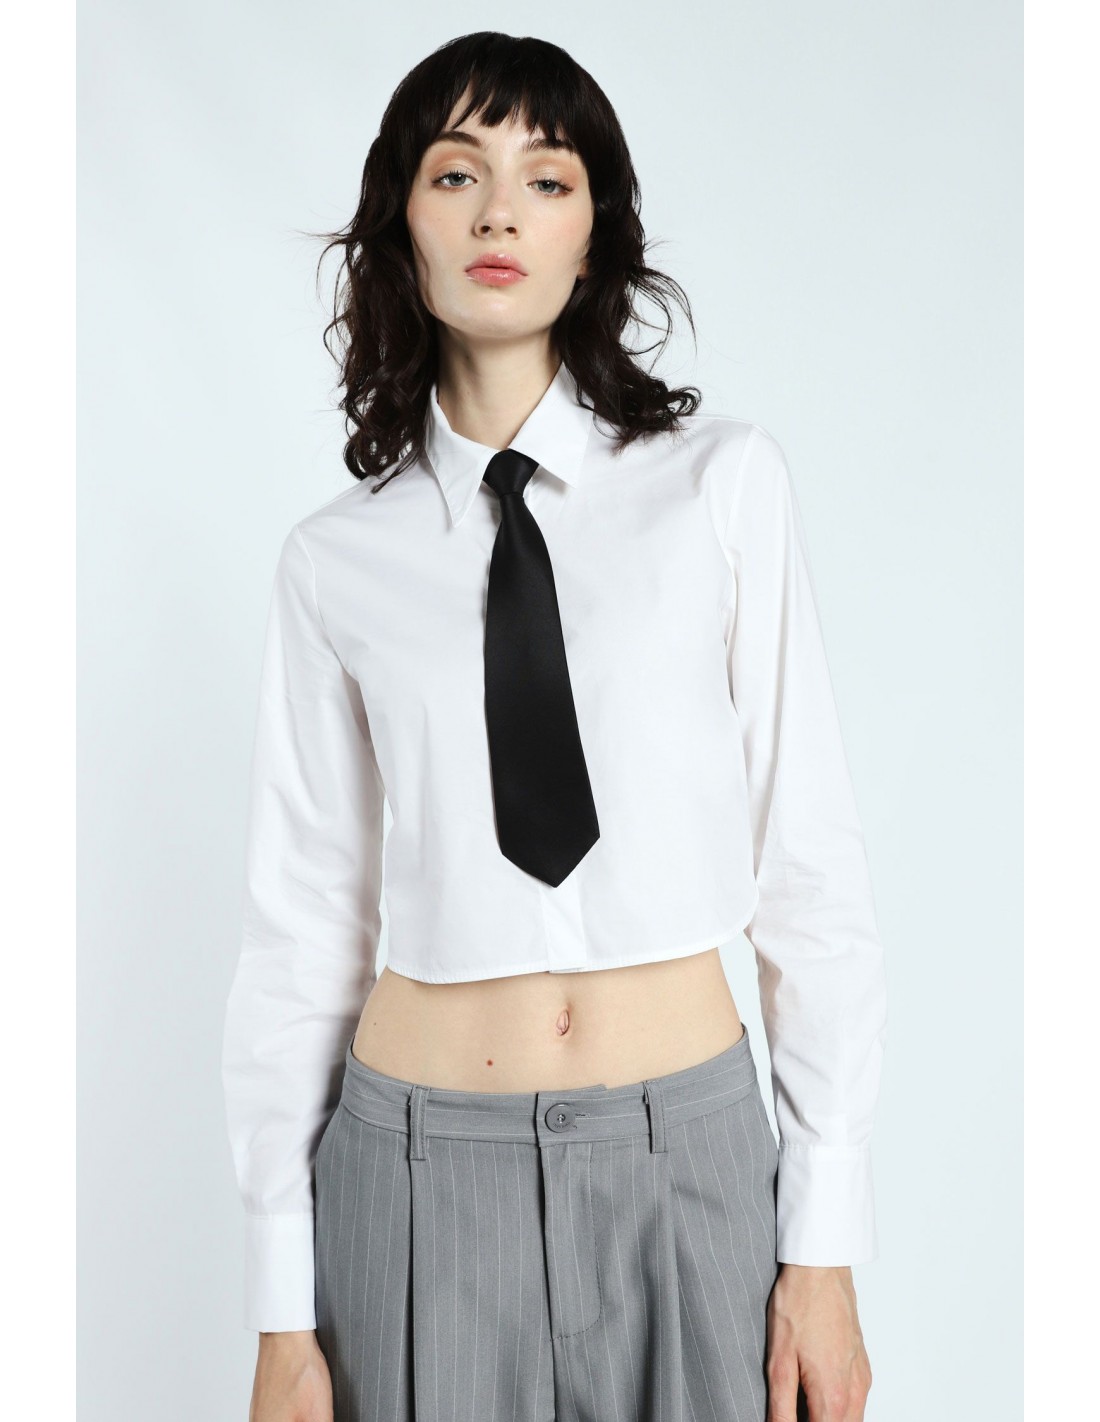 Imperial femme chemise blanche longueur courte avec cravate noire